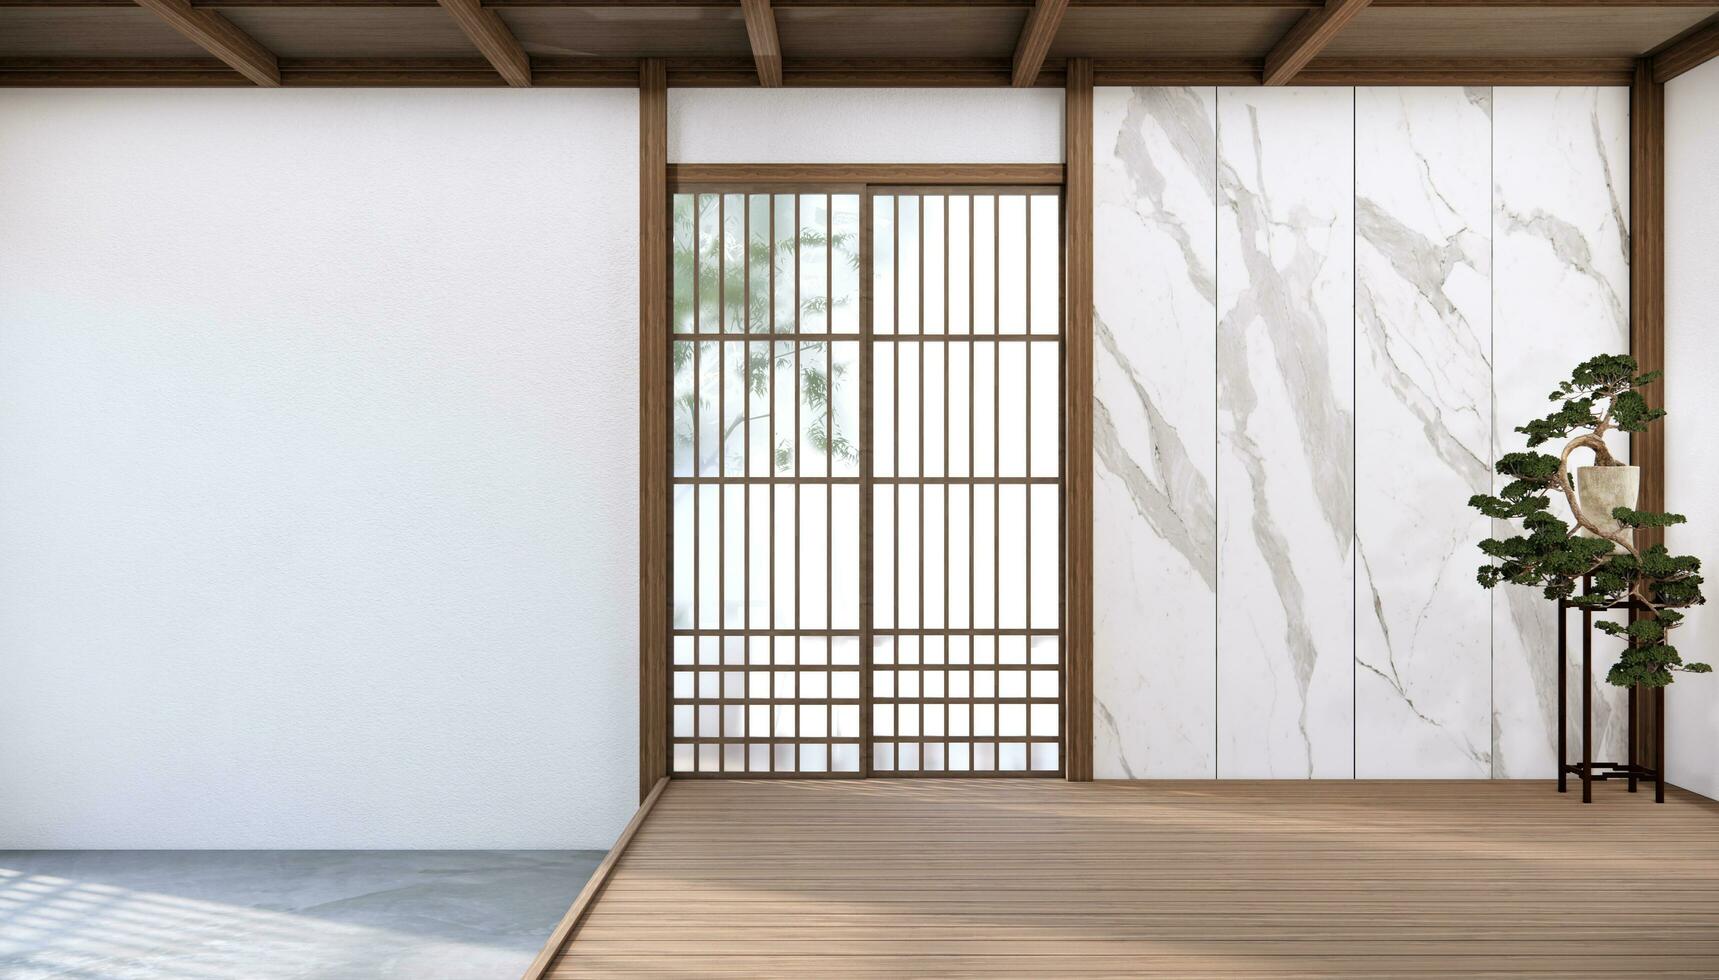 Japão estilo esvaziar quarto decorado com branco parede e madeira ripa parede foto